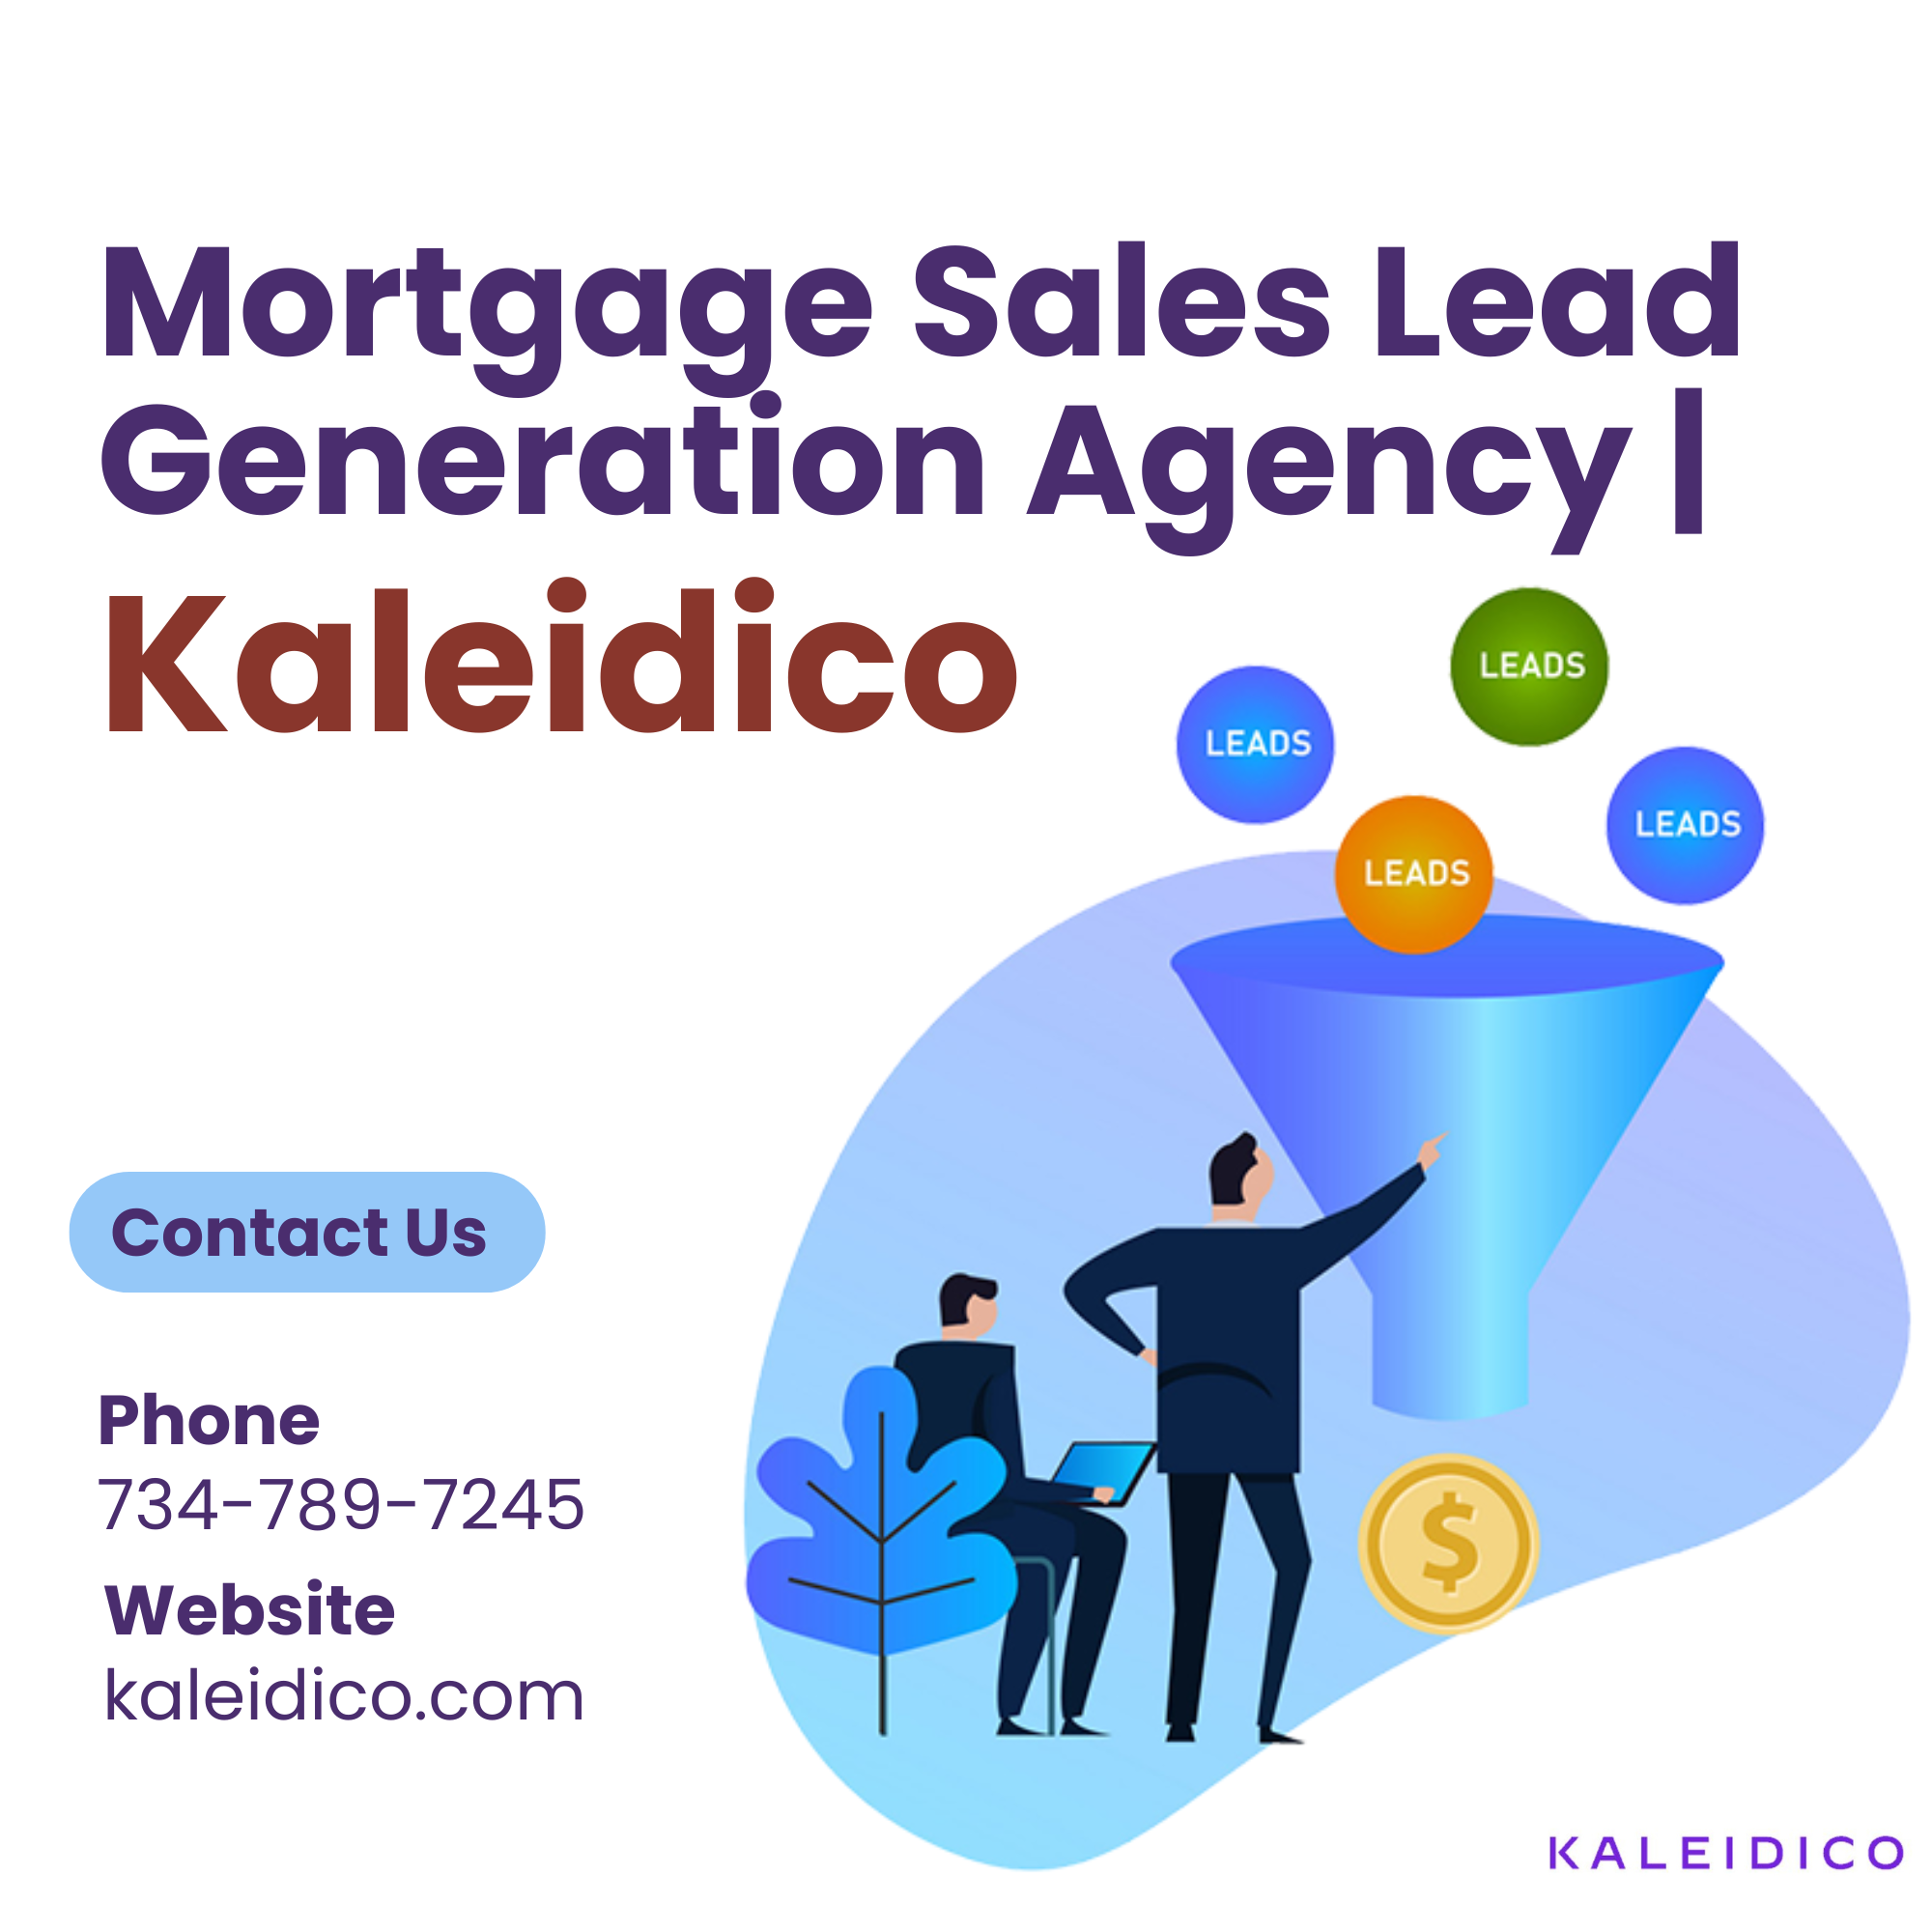  Mortgage Sales Lead Generation Agency | Kaleidico